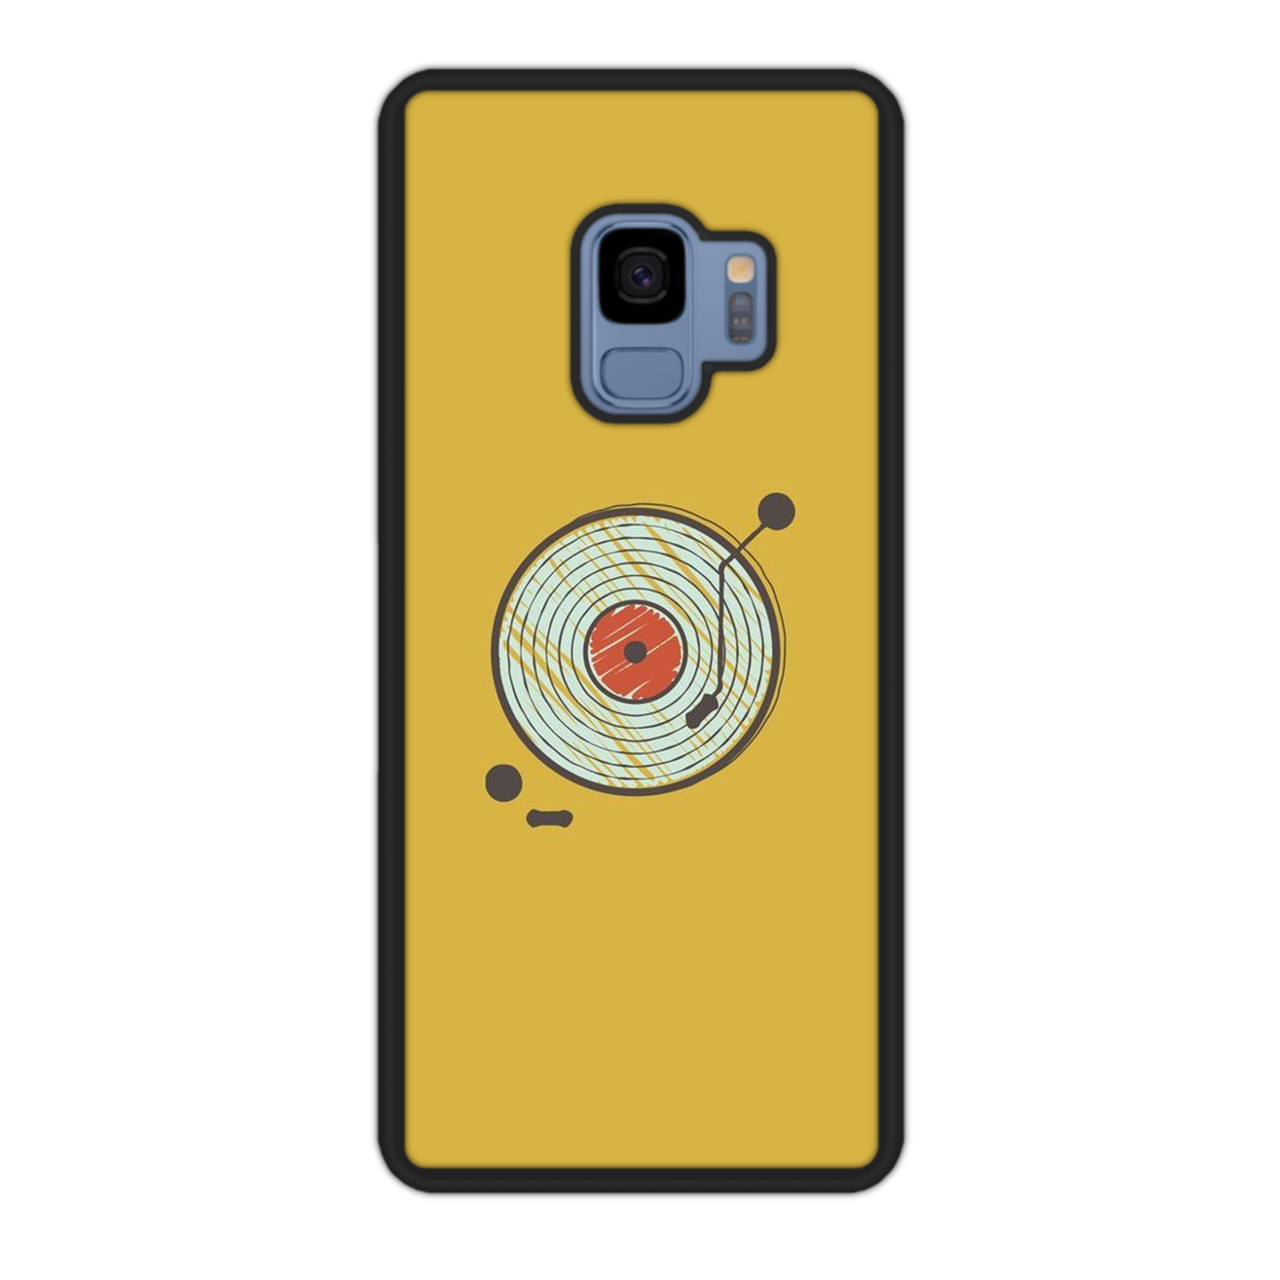 کاور آکام مدل AMCAS92217 مناسب برای گوشی موبایل سامسونگ Galaxy S9